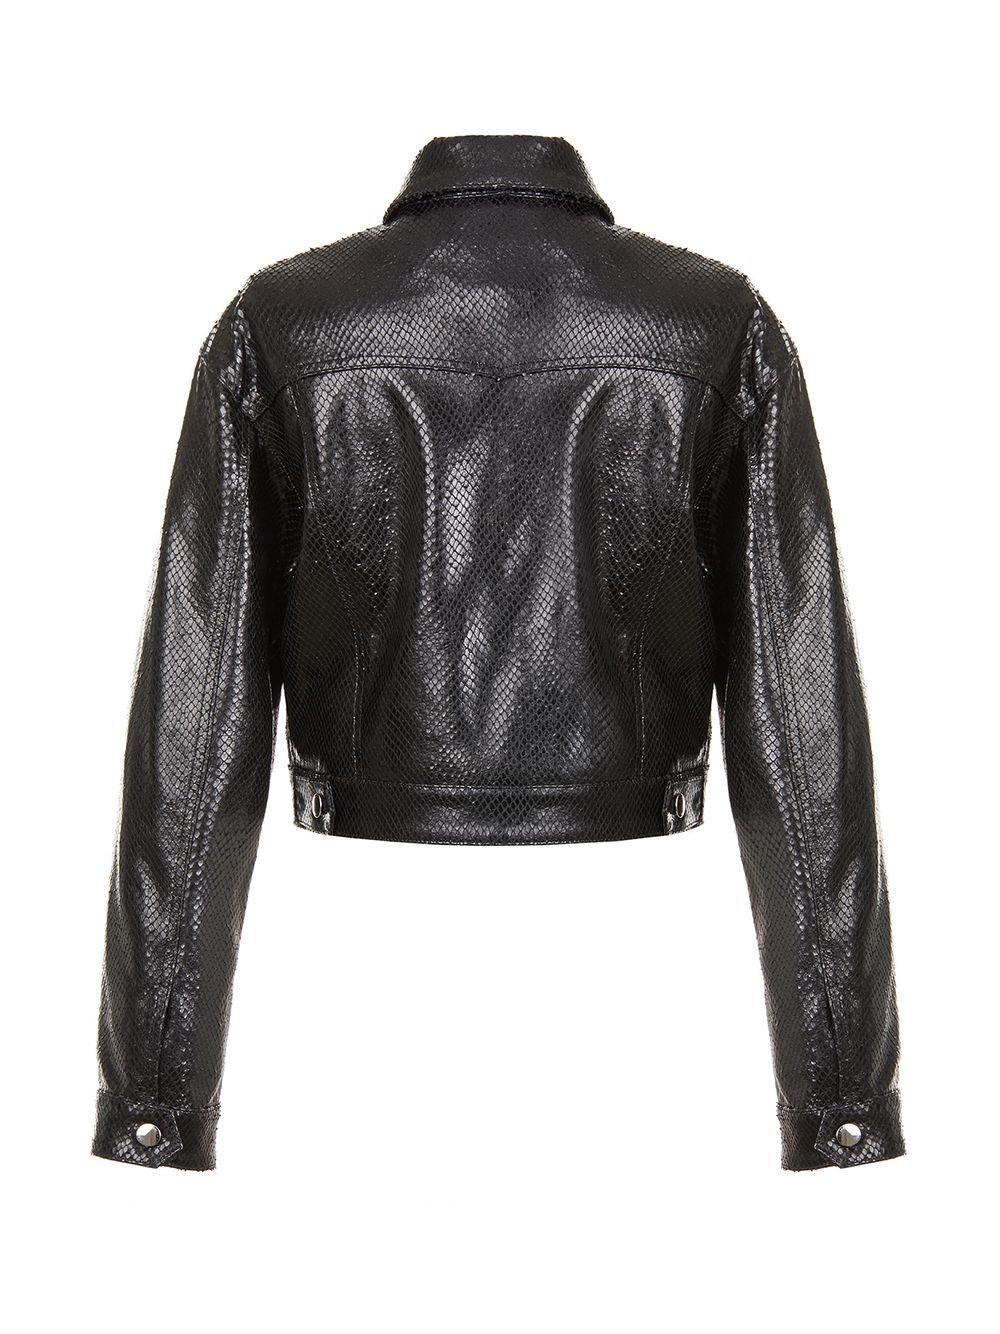 Image 2 of Giuseppe Zanotti Claudine python-effect leather jacket